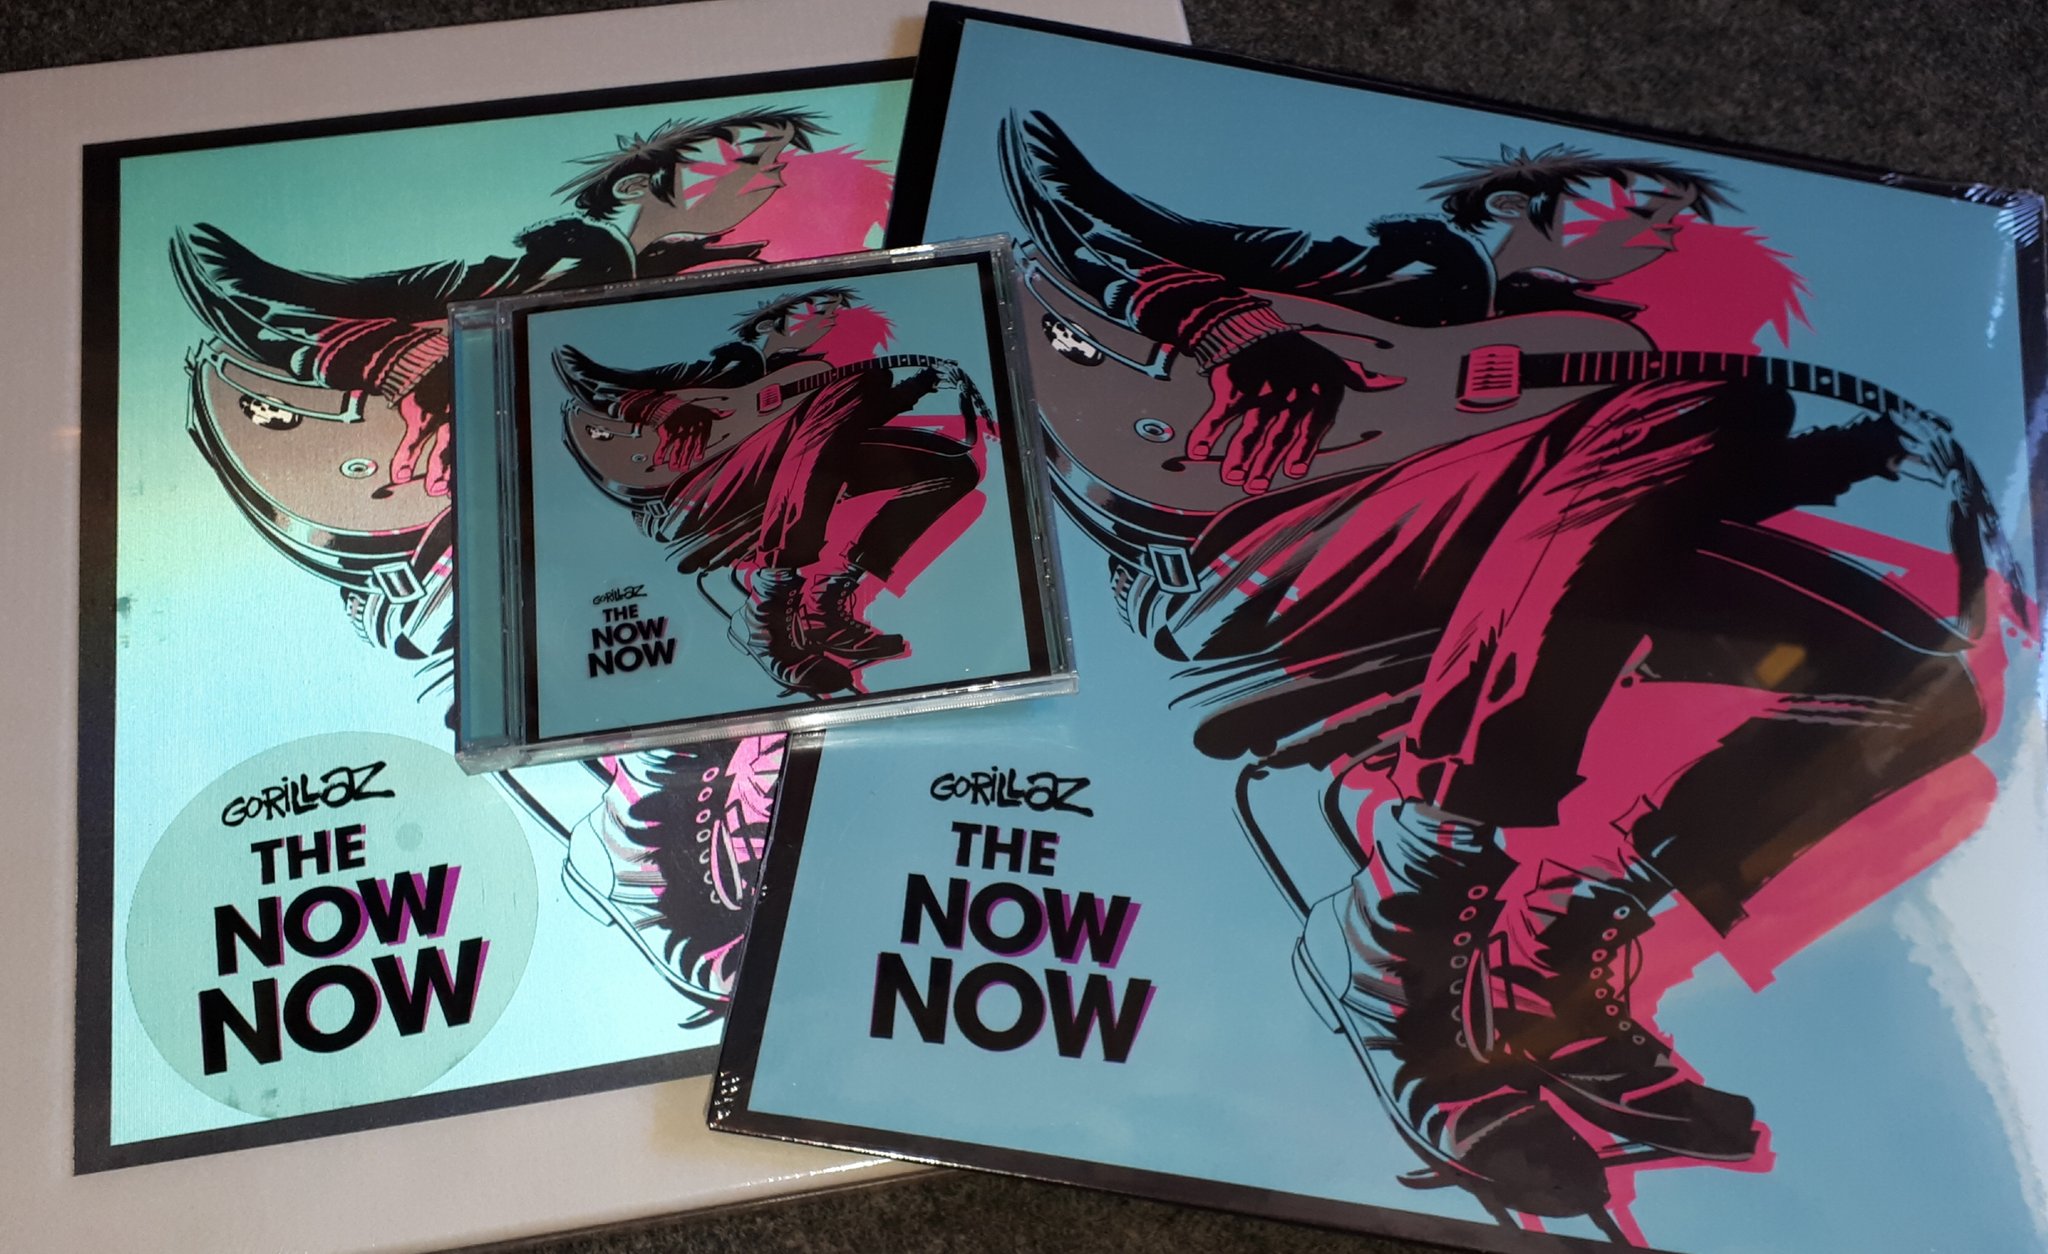 Группа now now. The Now Now. Gorillaz "the Now Now". Gorillaz "the Now Now (CD)". The Now Now альбом.